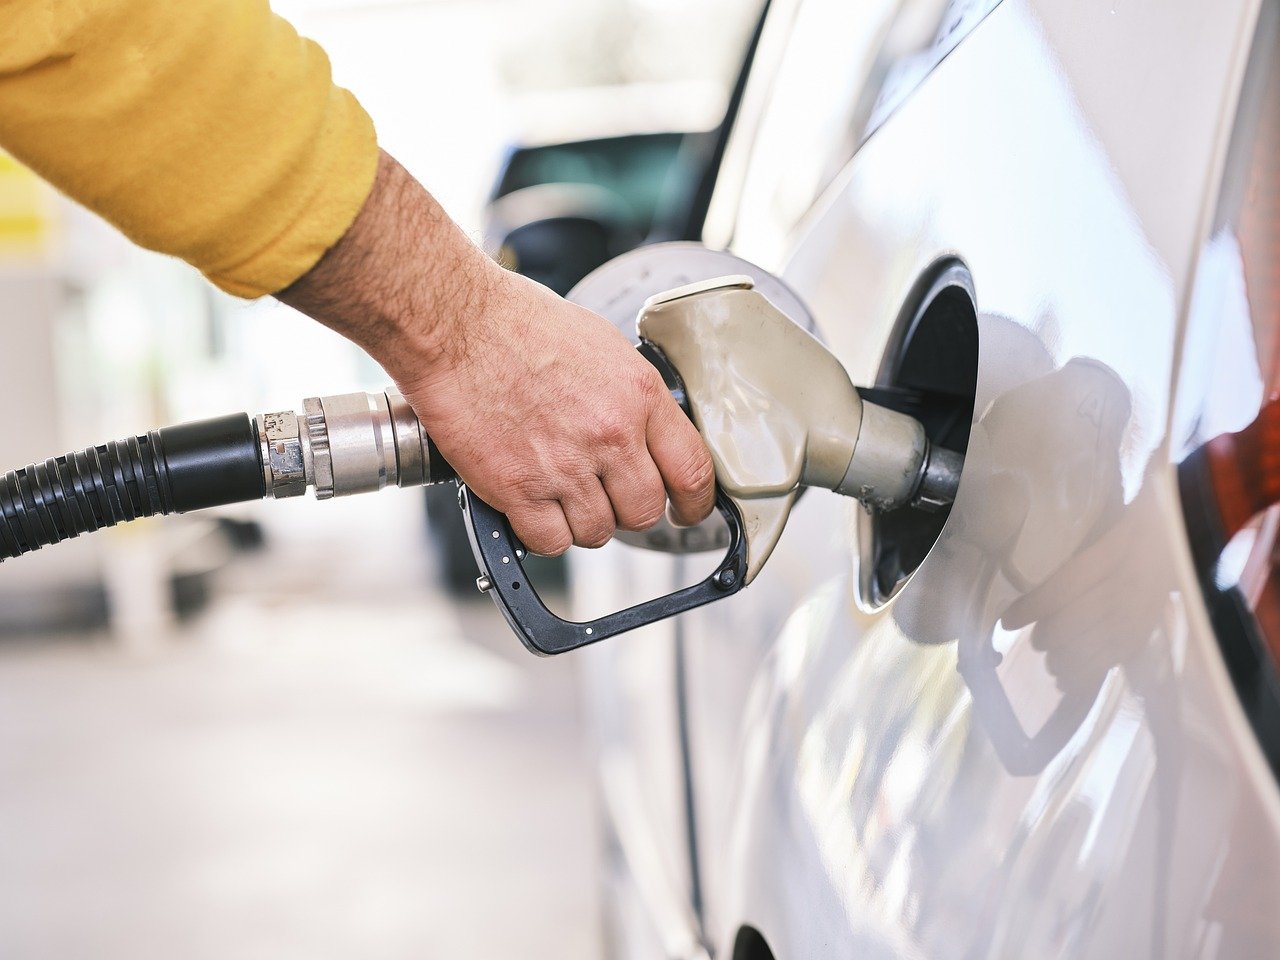  De ce crește prețul benzinei și când ne-am putea aștepta să scadă